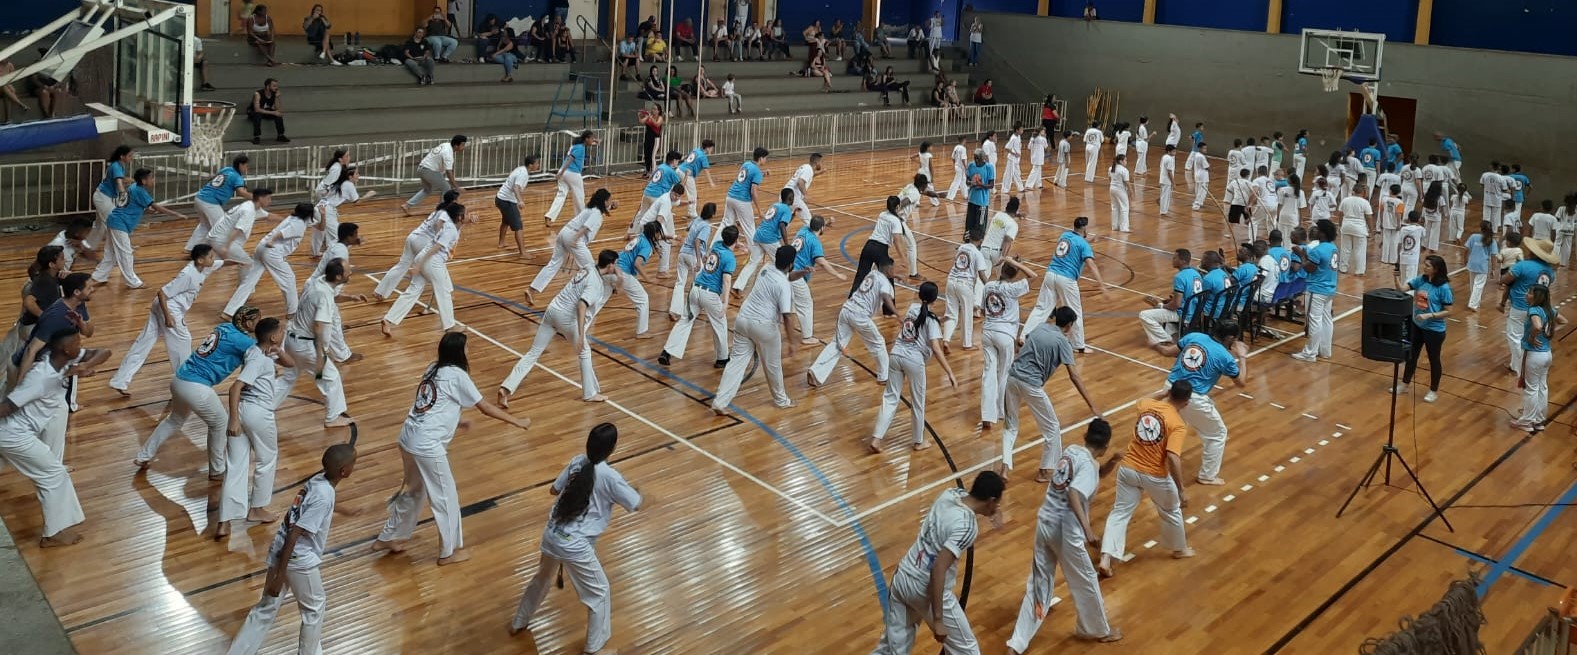 Encontro Nacional de Capoeira em Araraquara apresentou formato inédito de disputa